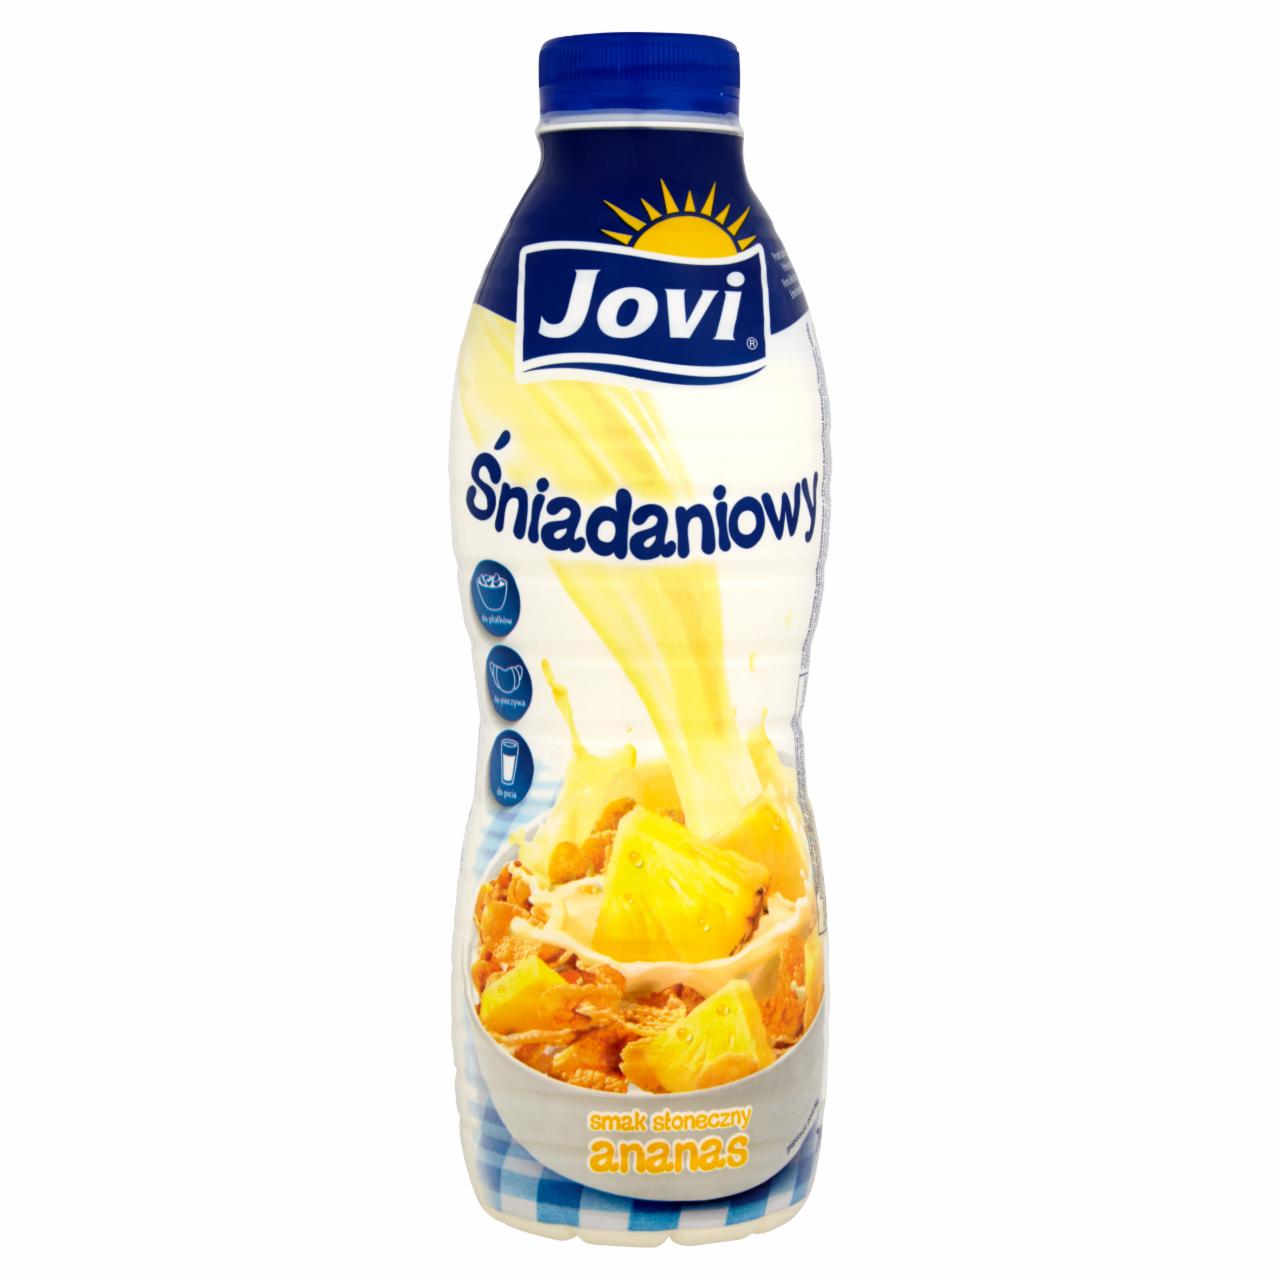 Zdjęcia - Jovi Śniadaniowy Napój mleczny smak słoneczny ananas 700 g